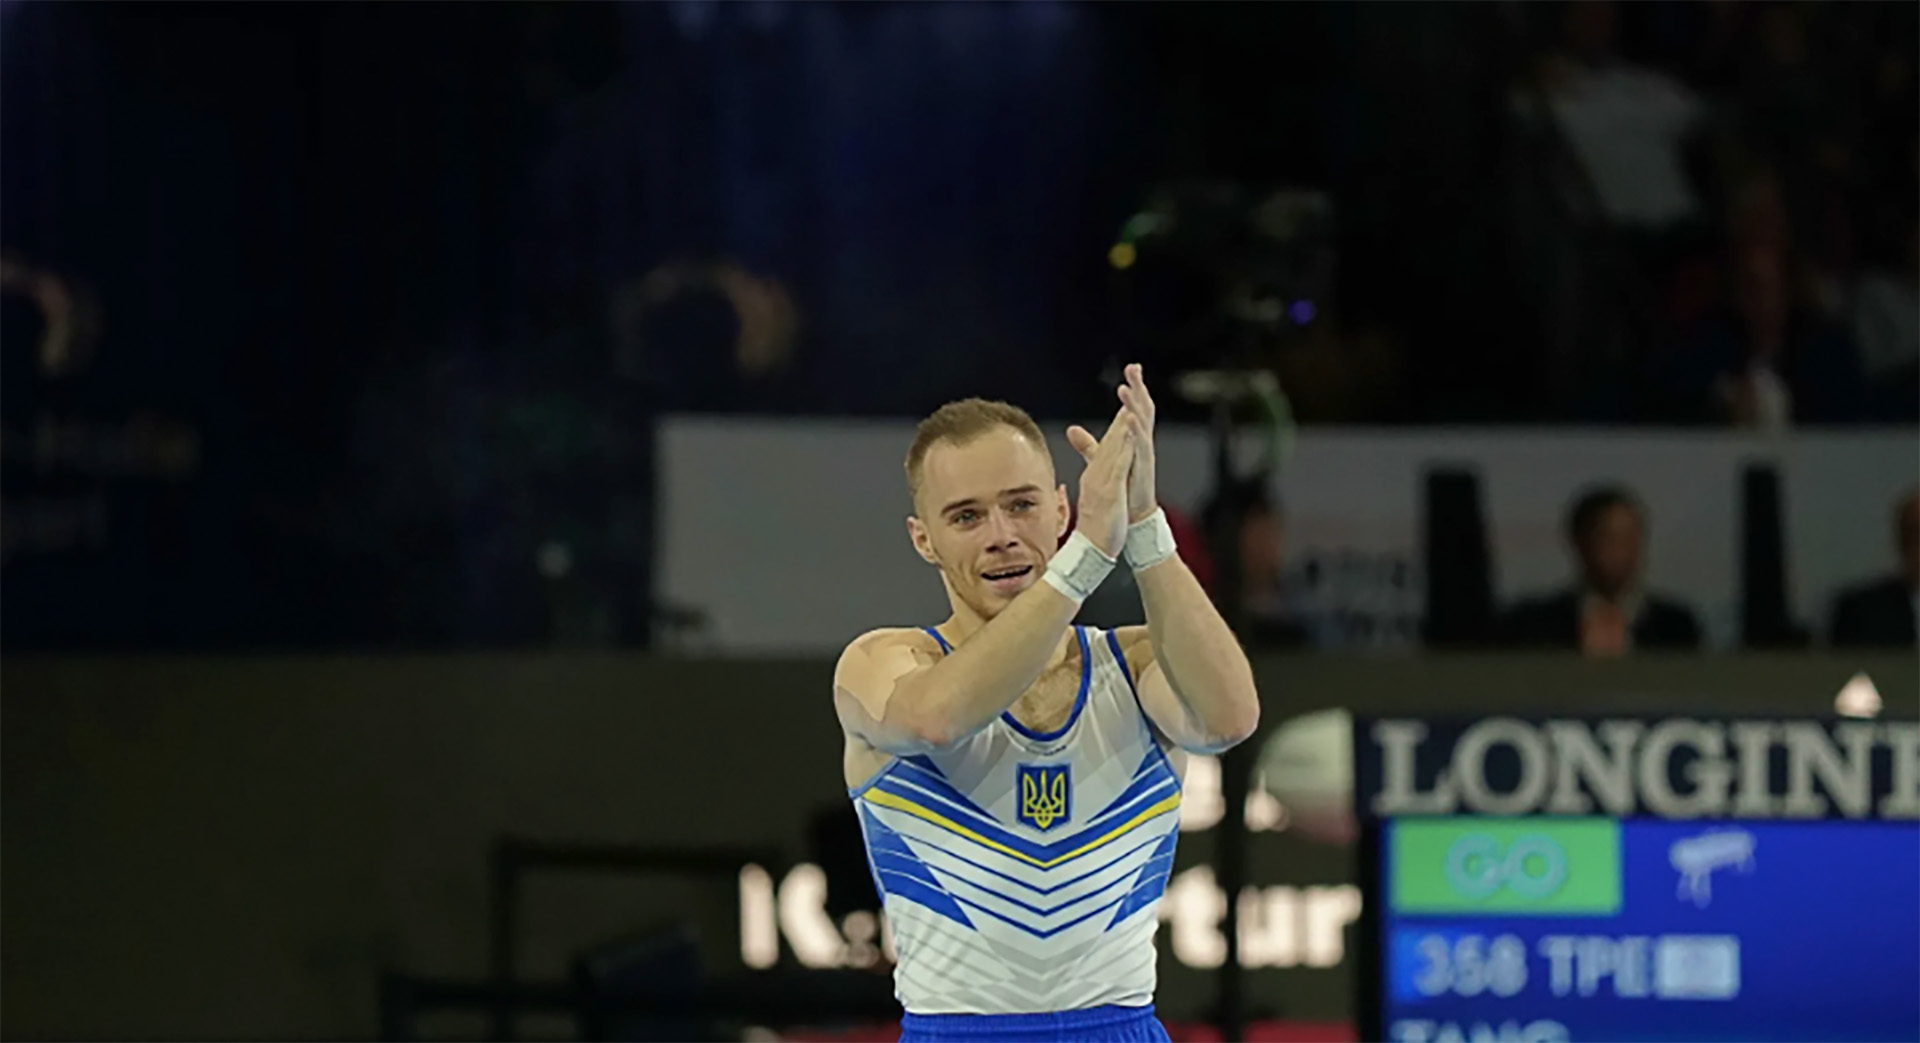 Además de la medalla dorada en paralelas, Verniaiev fue subcampeón olímpico All Around en Río 2016.